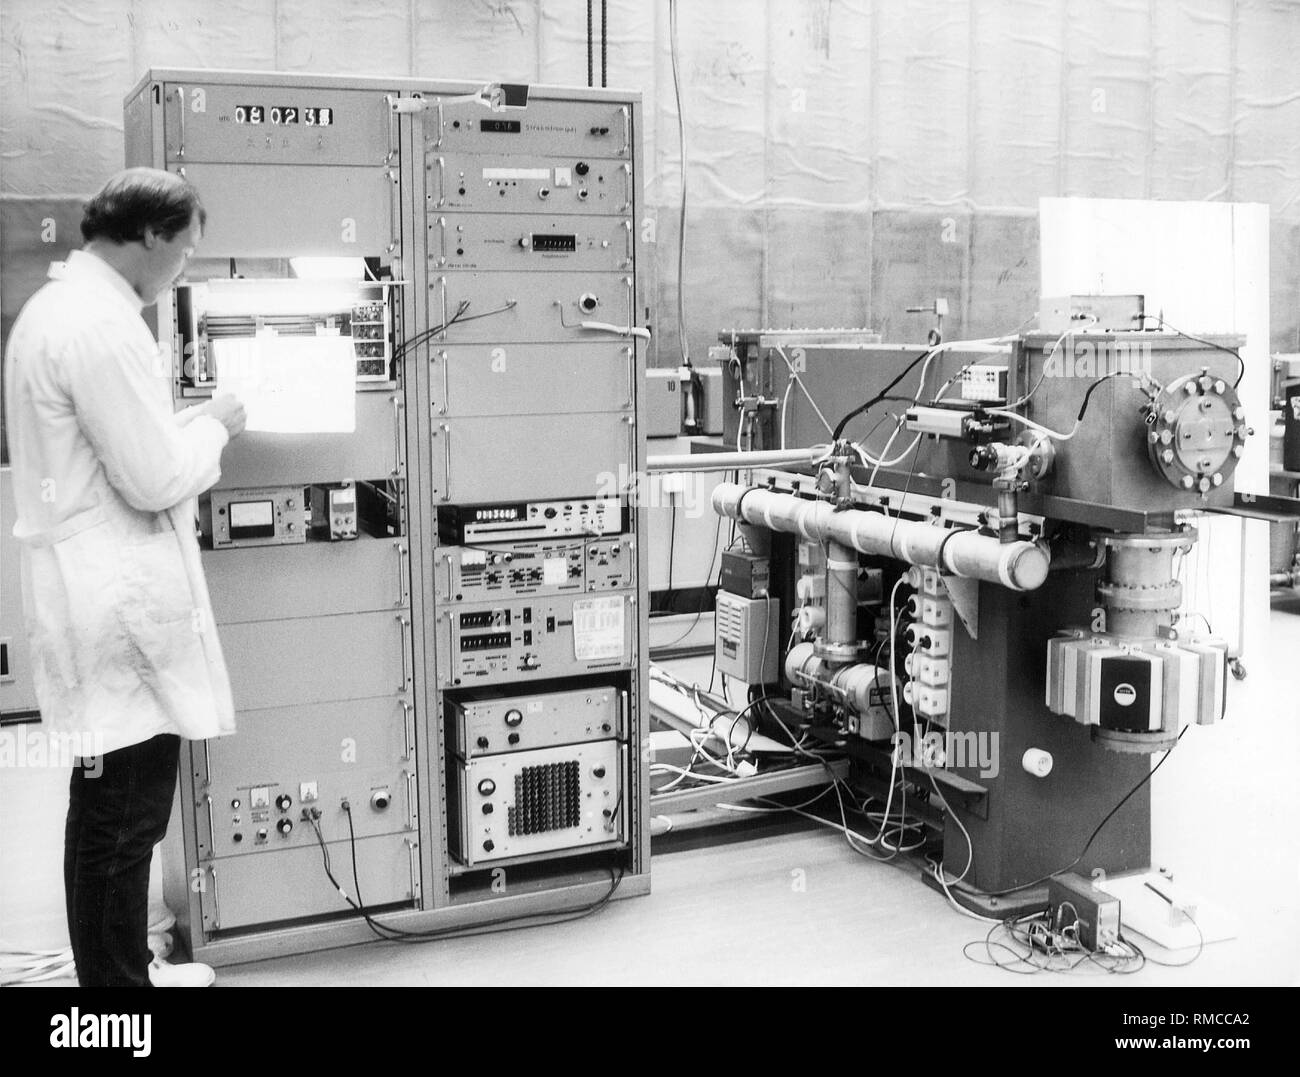 Die Atomuhr CS1 der Physikalisch-Technischen Bundesanstalt in Braunschweig,  die Zeit Signale an alle Empfänger Uhren in Europa überträgt  Stockfotografie - Alamy